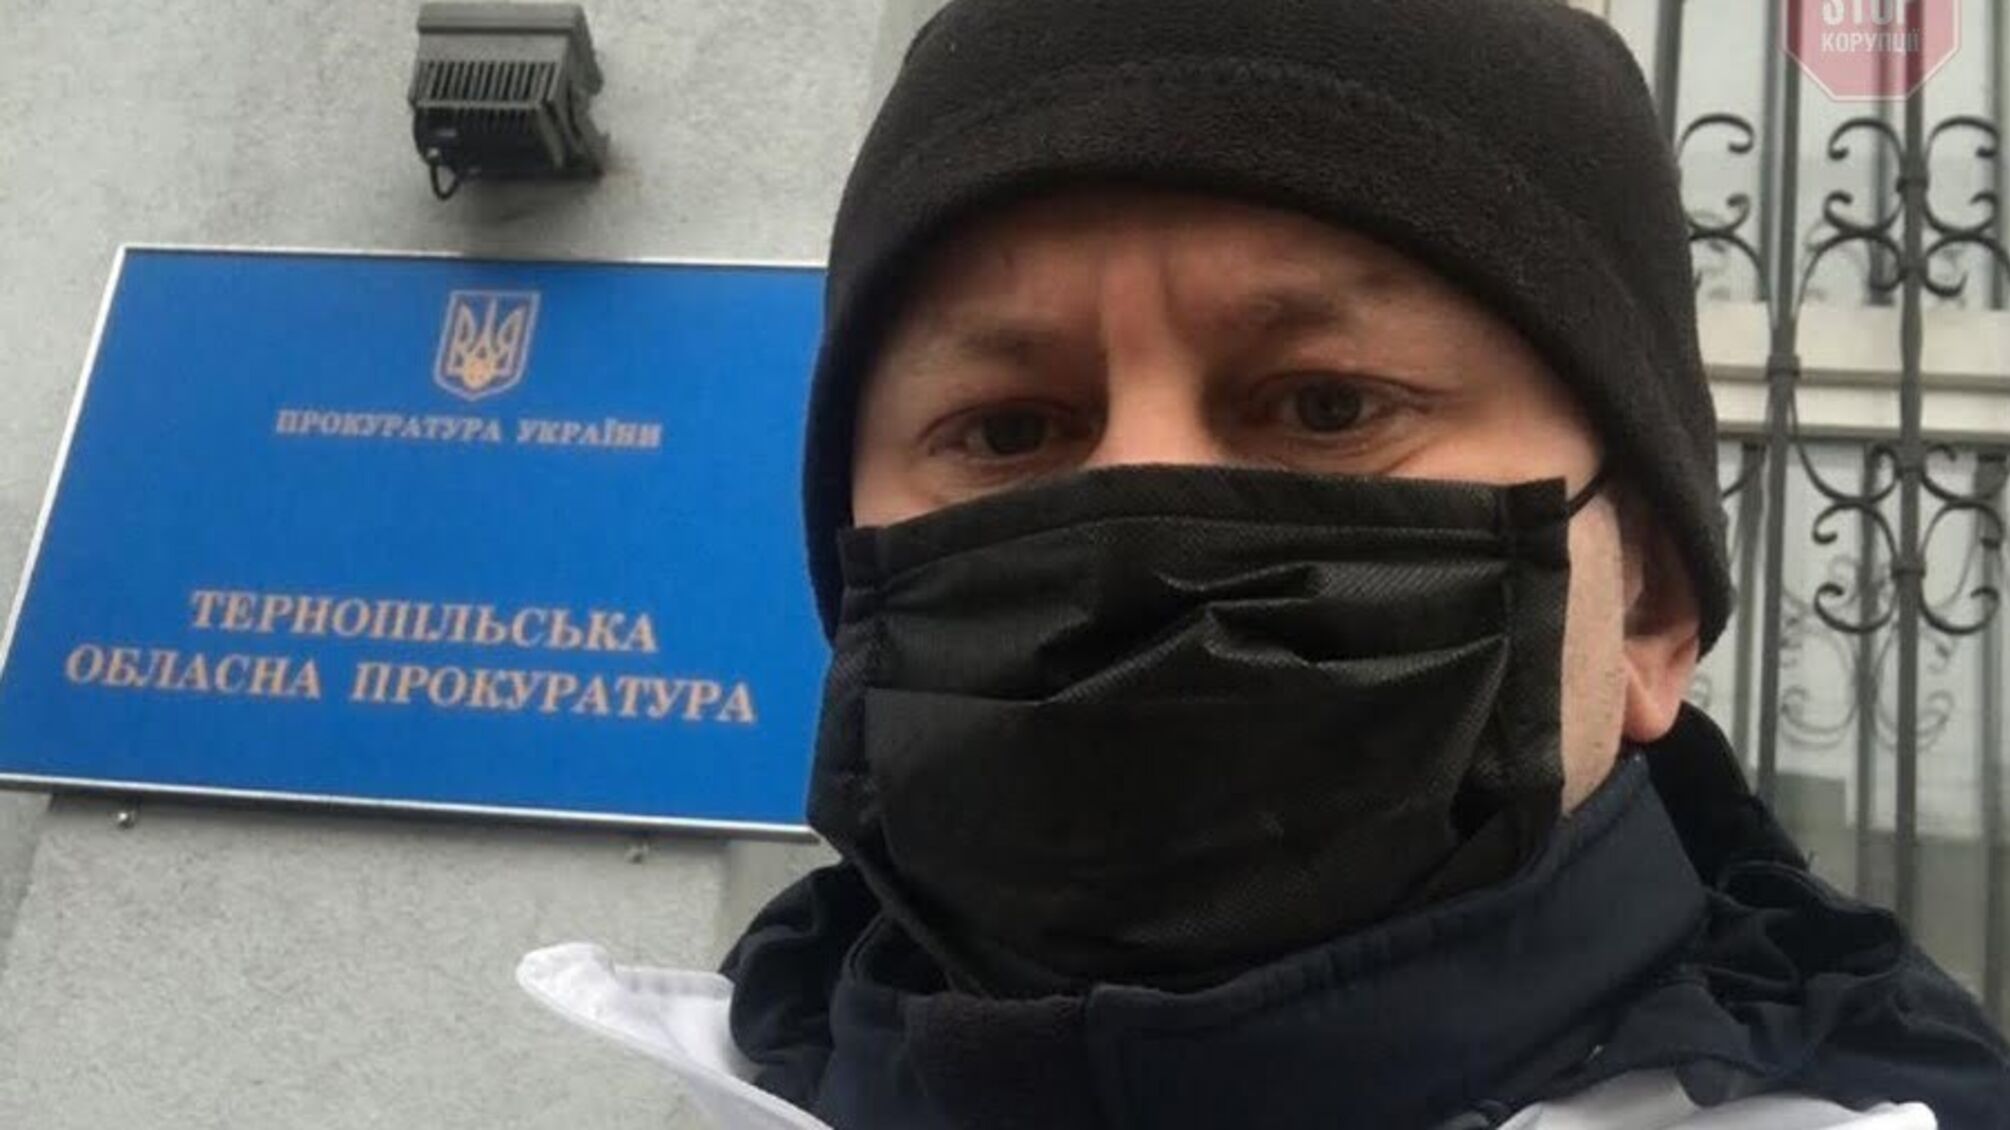 Антикоррупционные активисты проинспектировали Тернопольская областная прокуратура